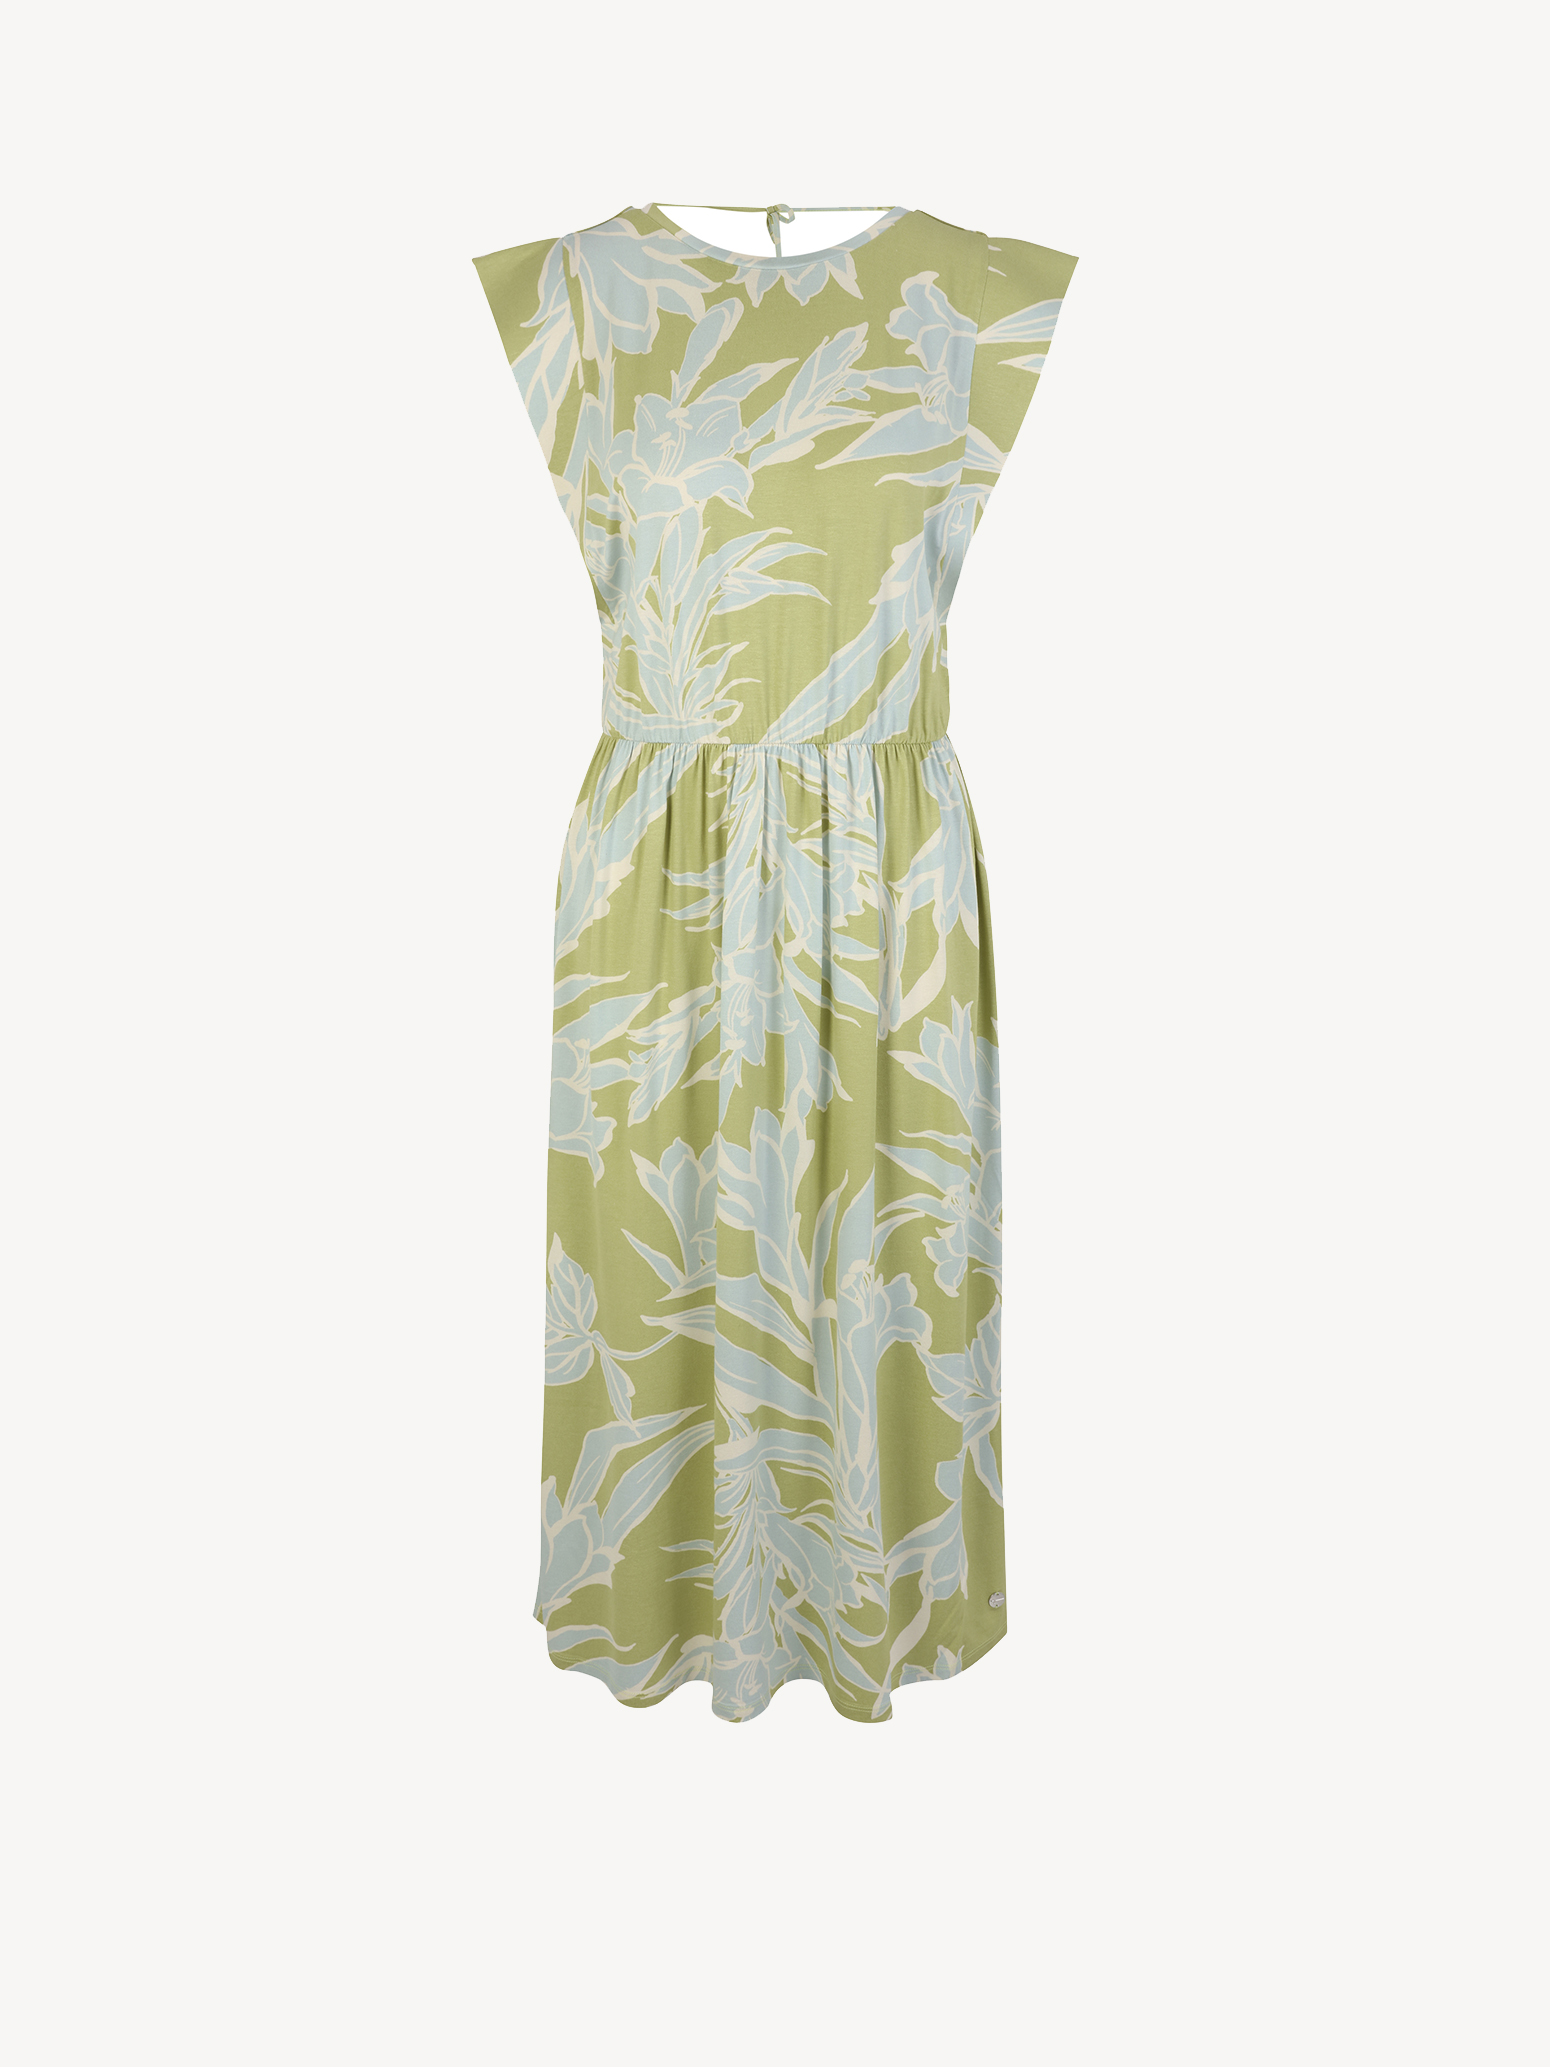 Kleid - grün TAW0430-63102: Tamaris Kleider online kaufen!